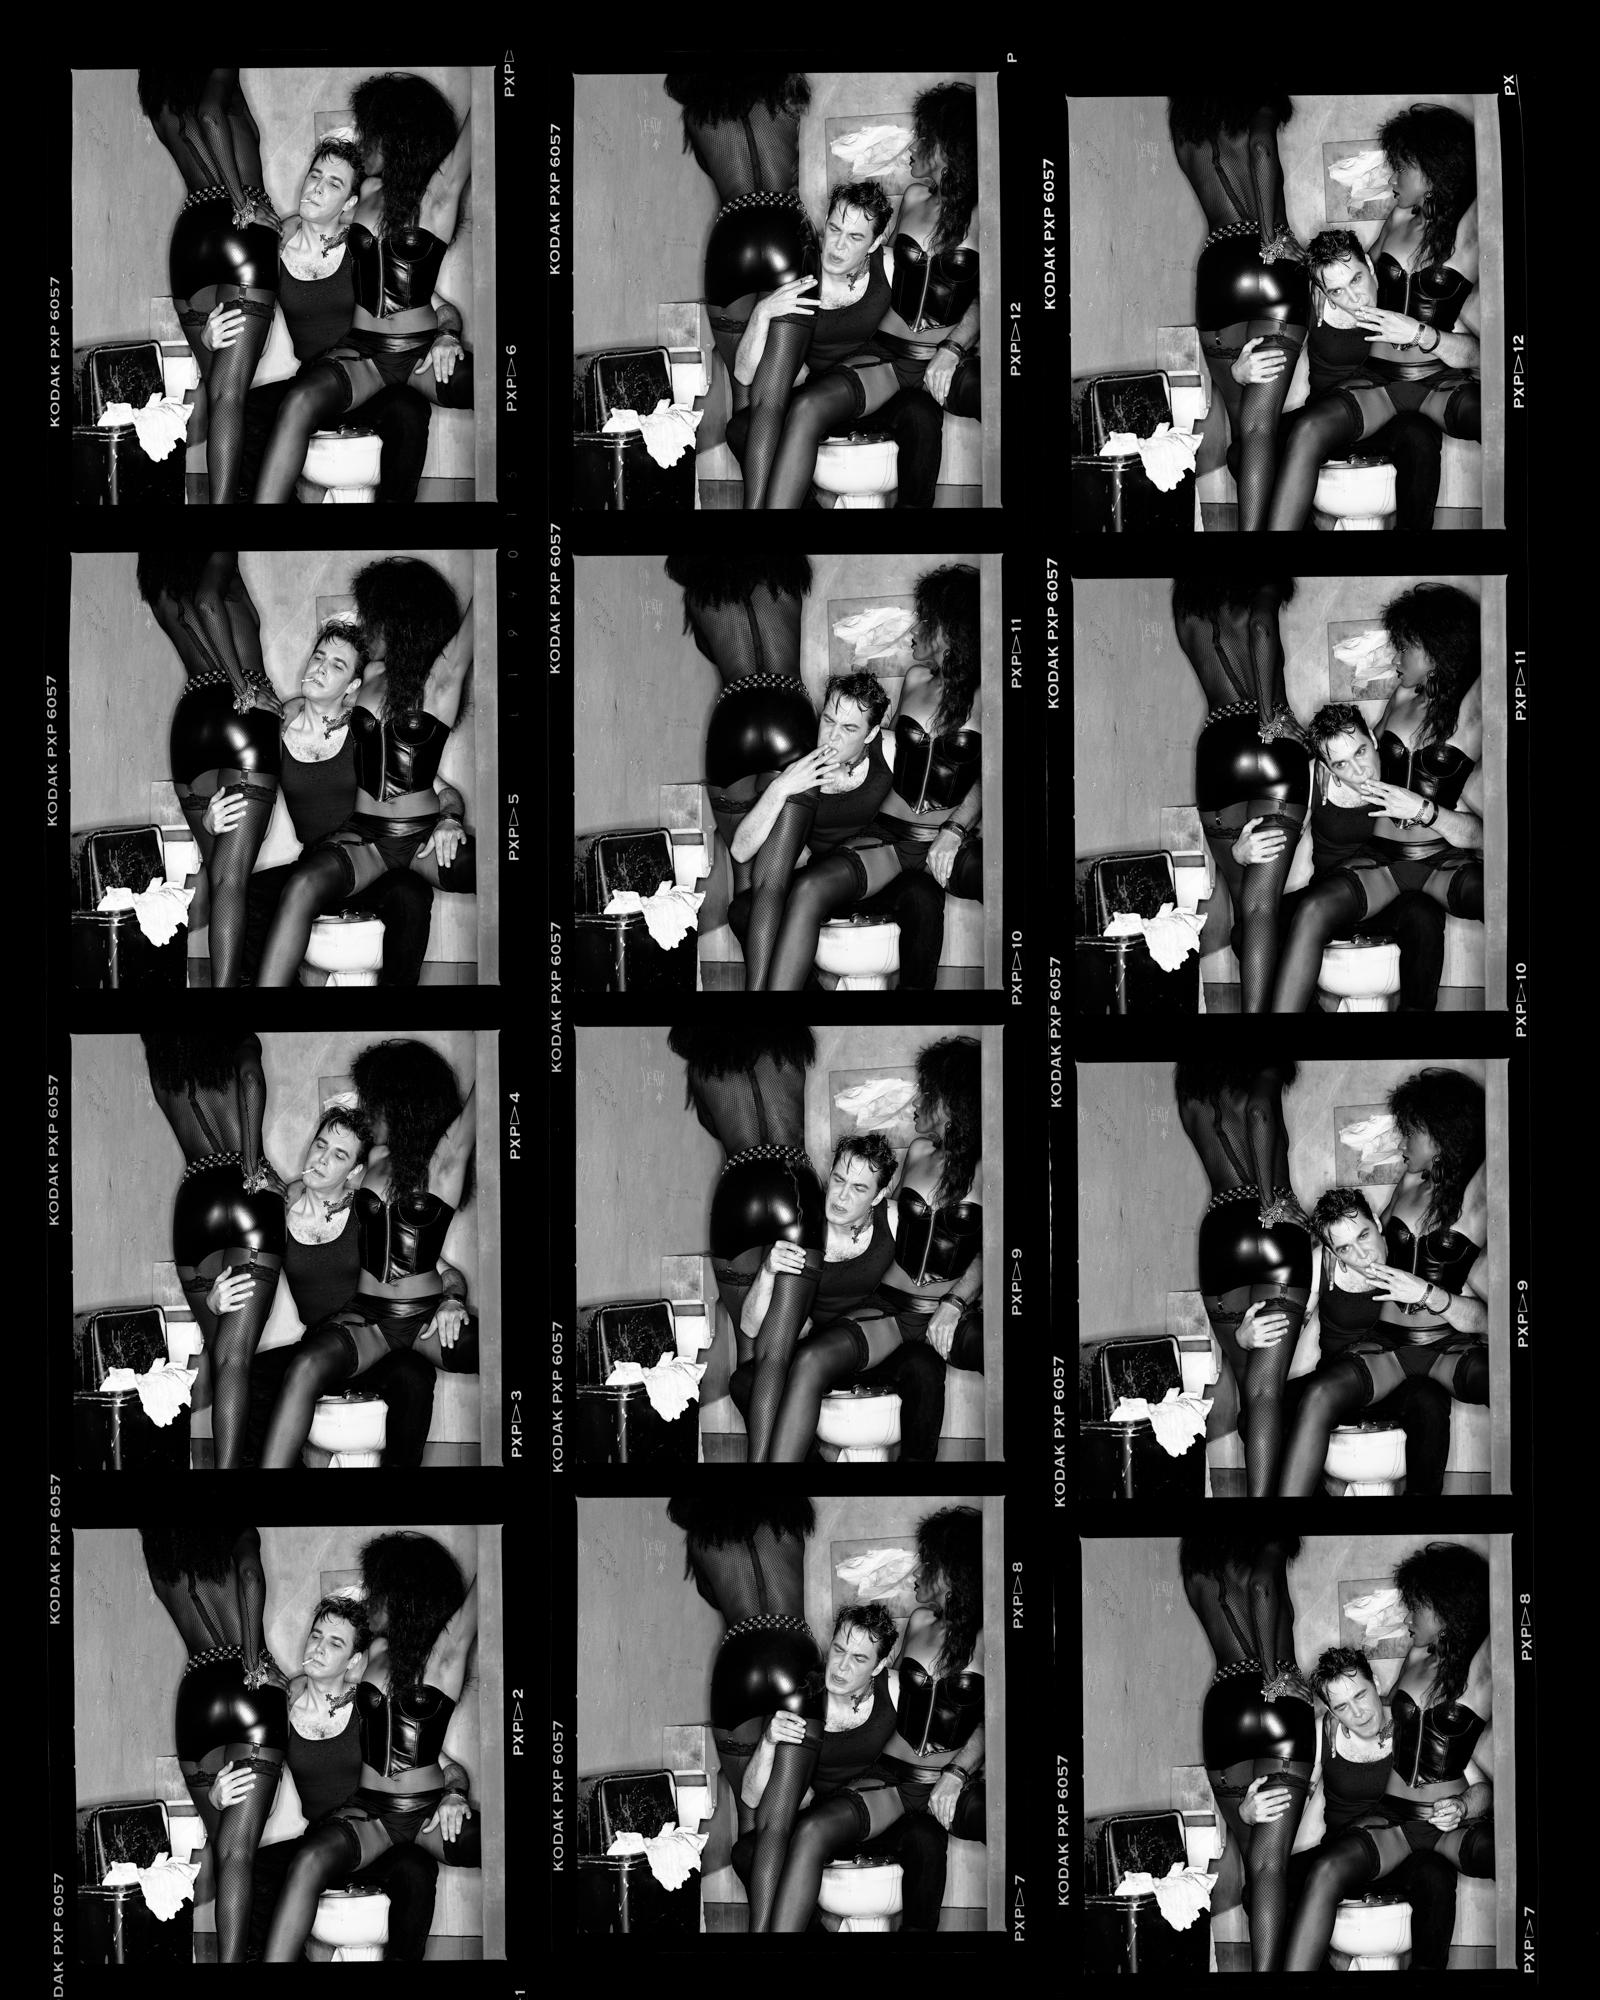 Black and White Photograph Greg Gorman - feuilles de compteur Jeff Koons, XXIe siècle, contemporain, célébrités, photographie